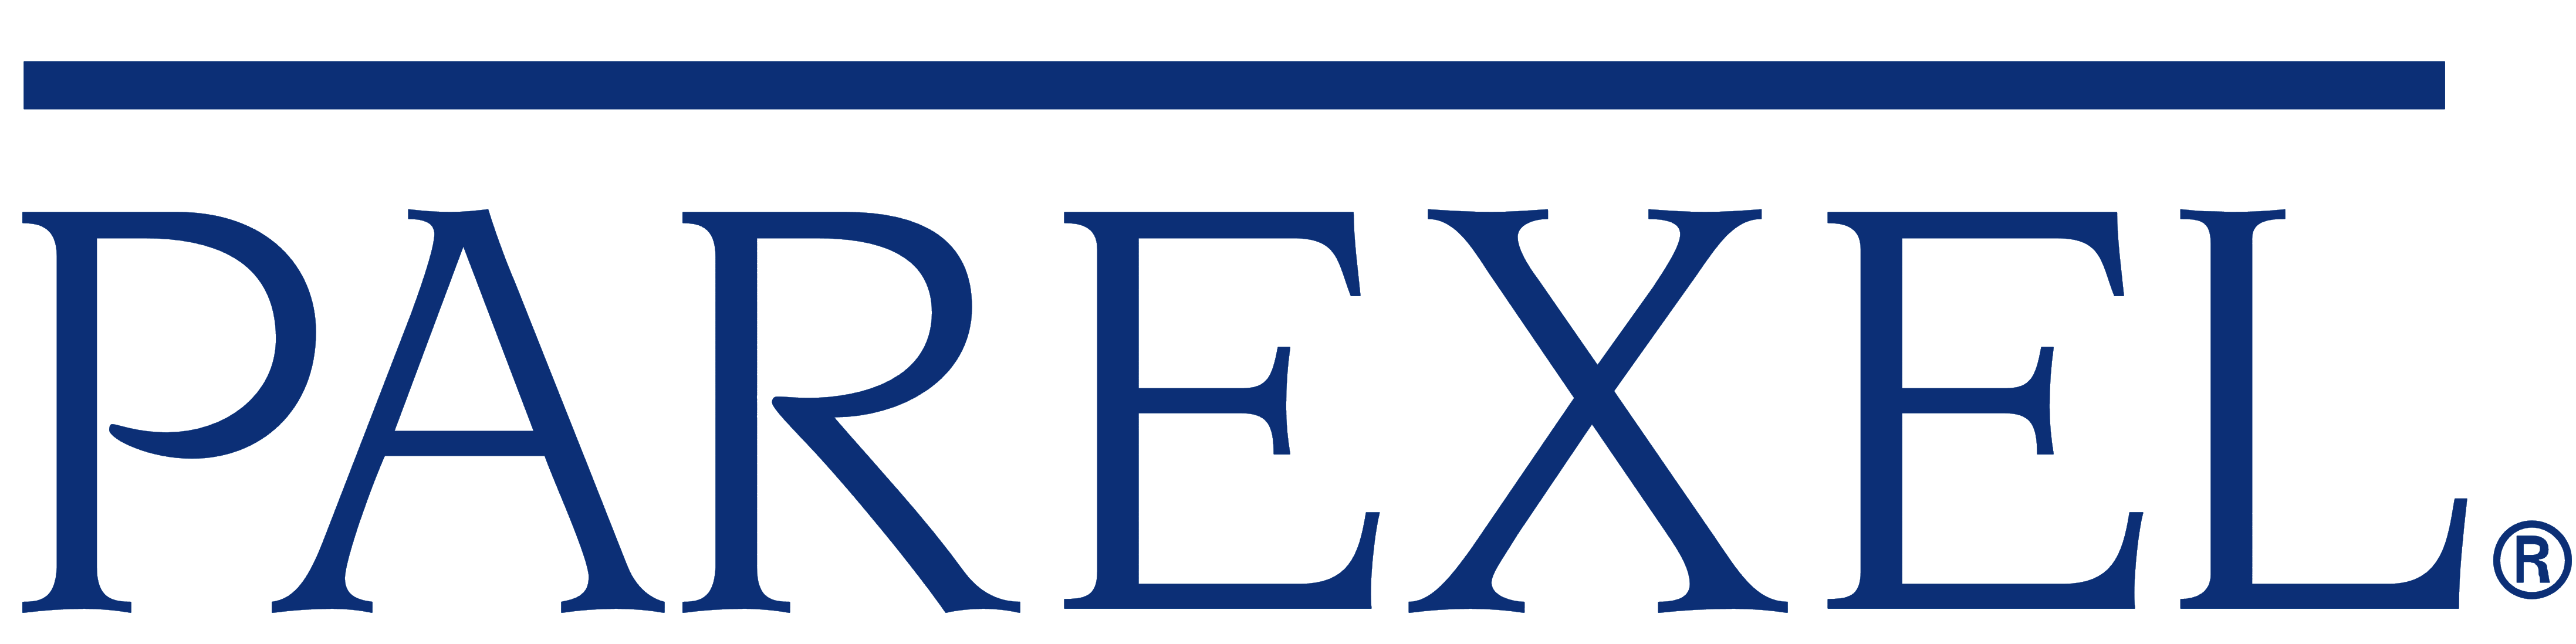 Parexel logo, logotype